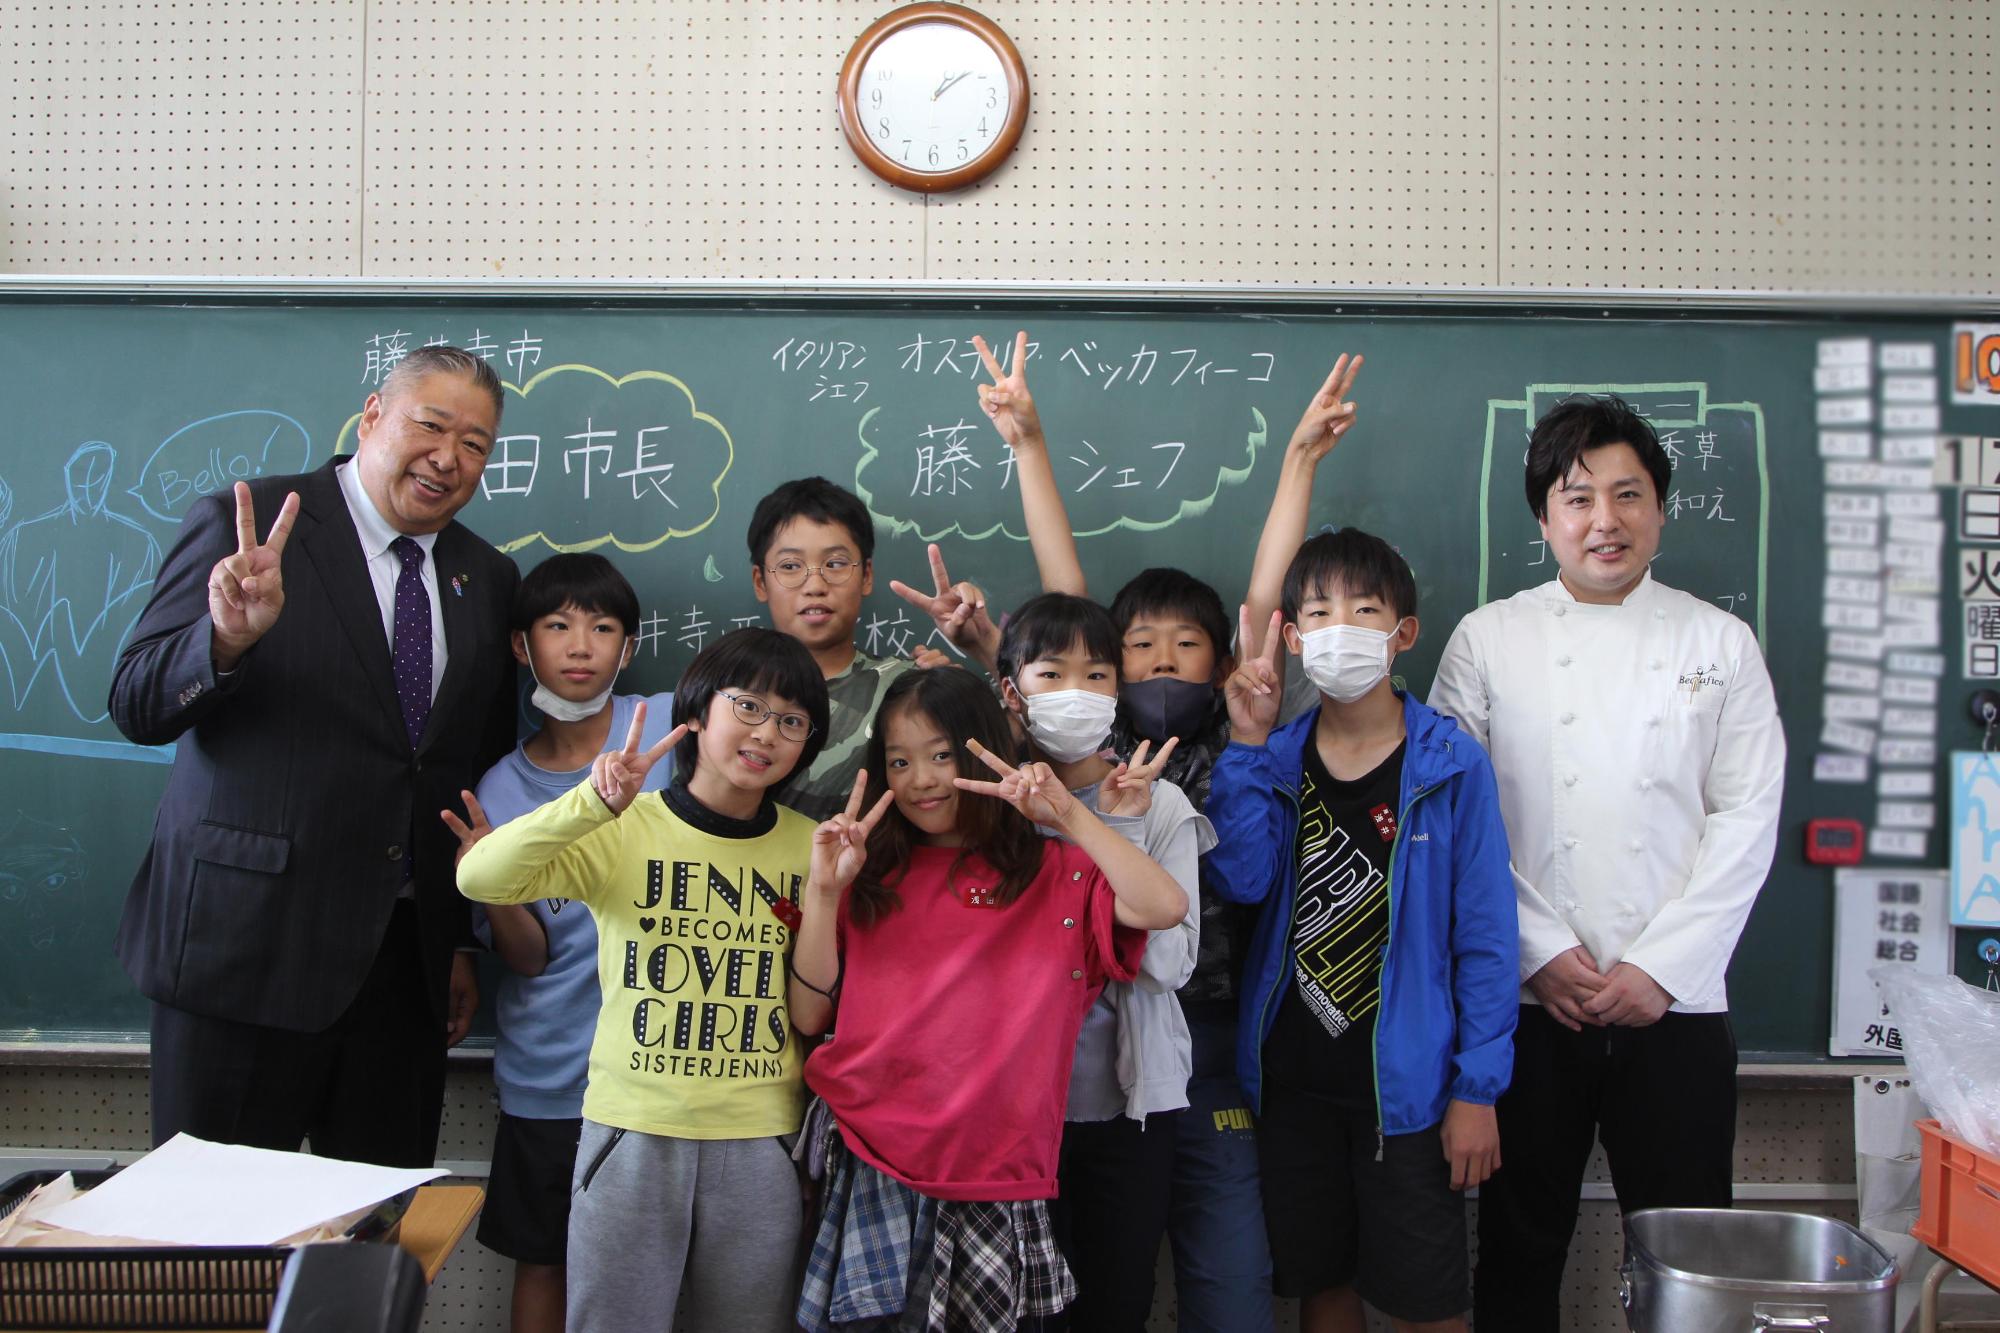 藤井シェフと岡田市長と子どもたちが教室の黒板の前で記念撮影する様子の写真